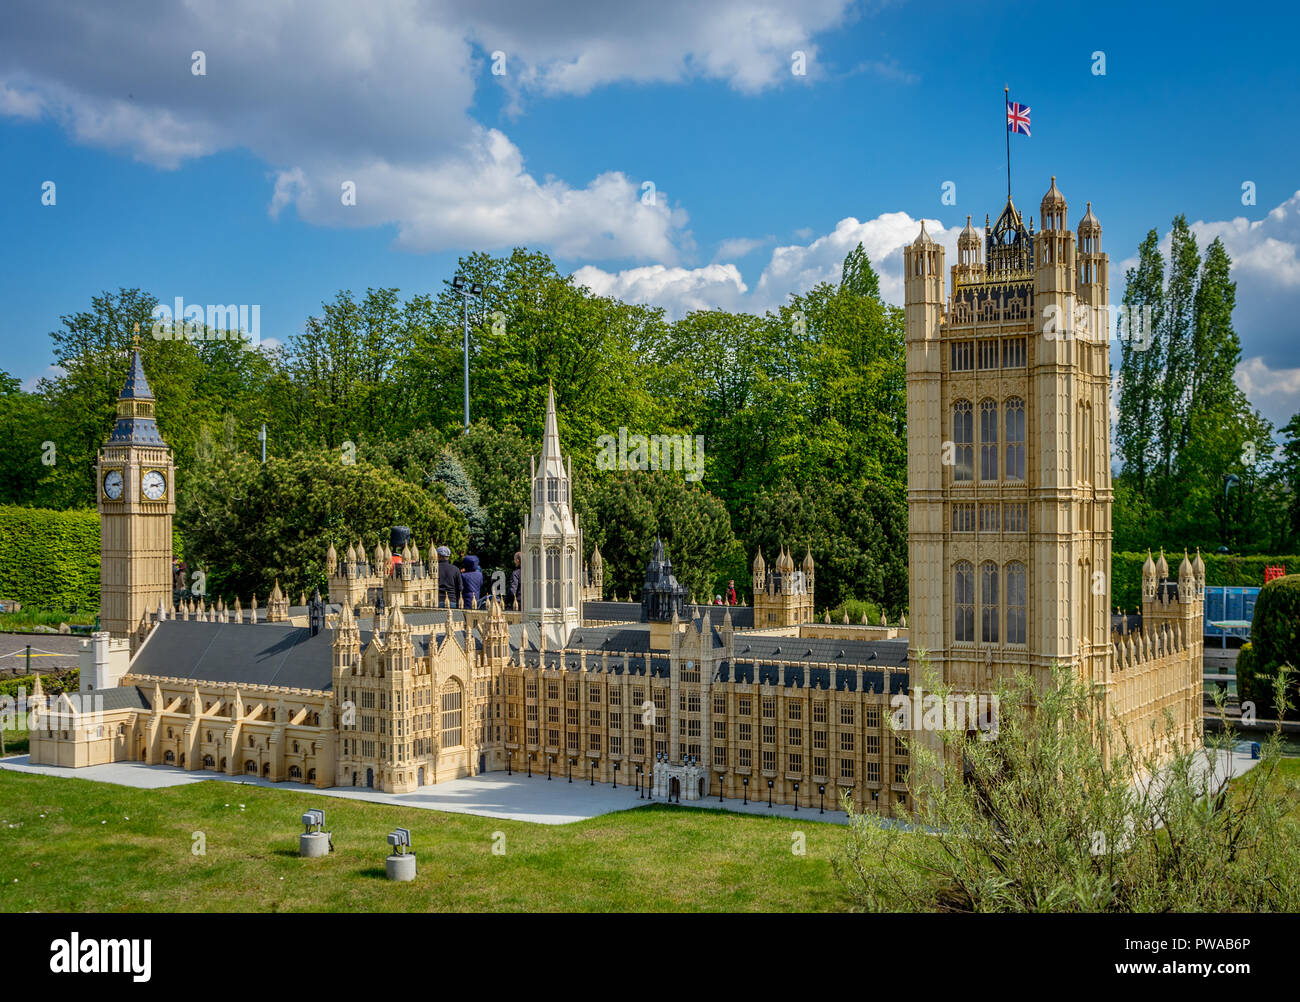 Bruxelles, Belgique - 17 Avril 2017 : Miniatures au parc Mini-Europe - reproduction de la le palais de Westminster à Londres, Royaume-Uni, Europe Banque D'Images